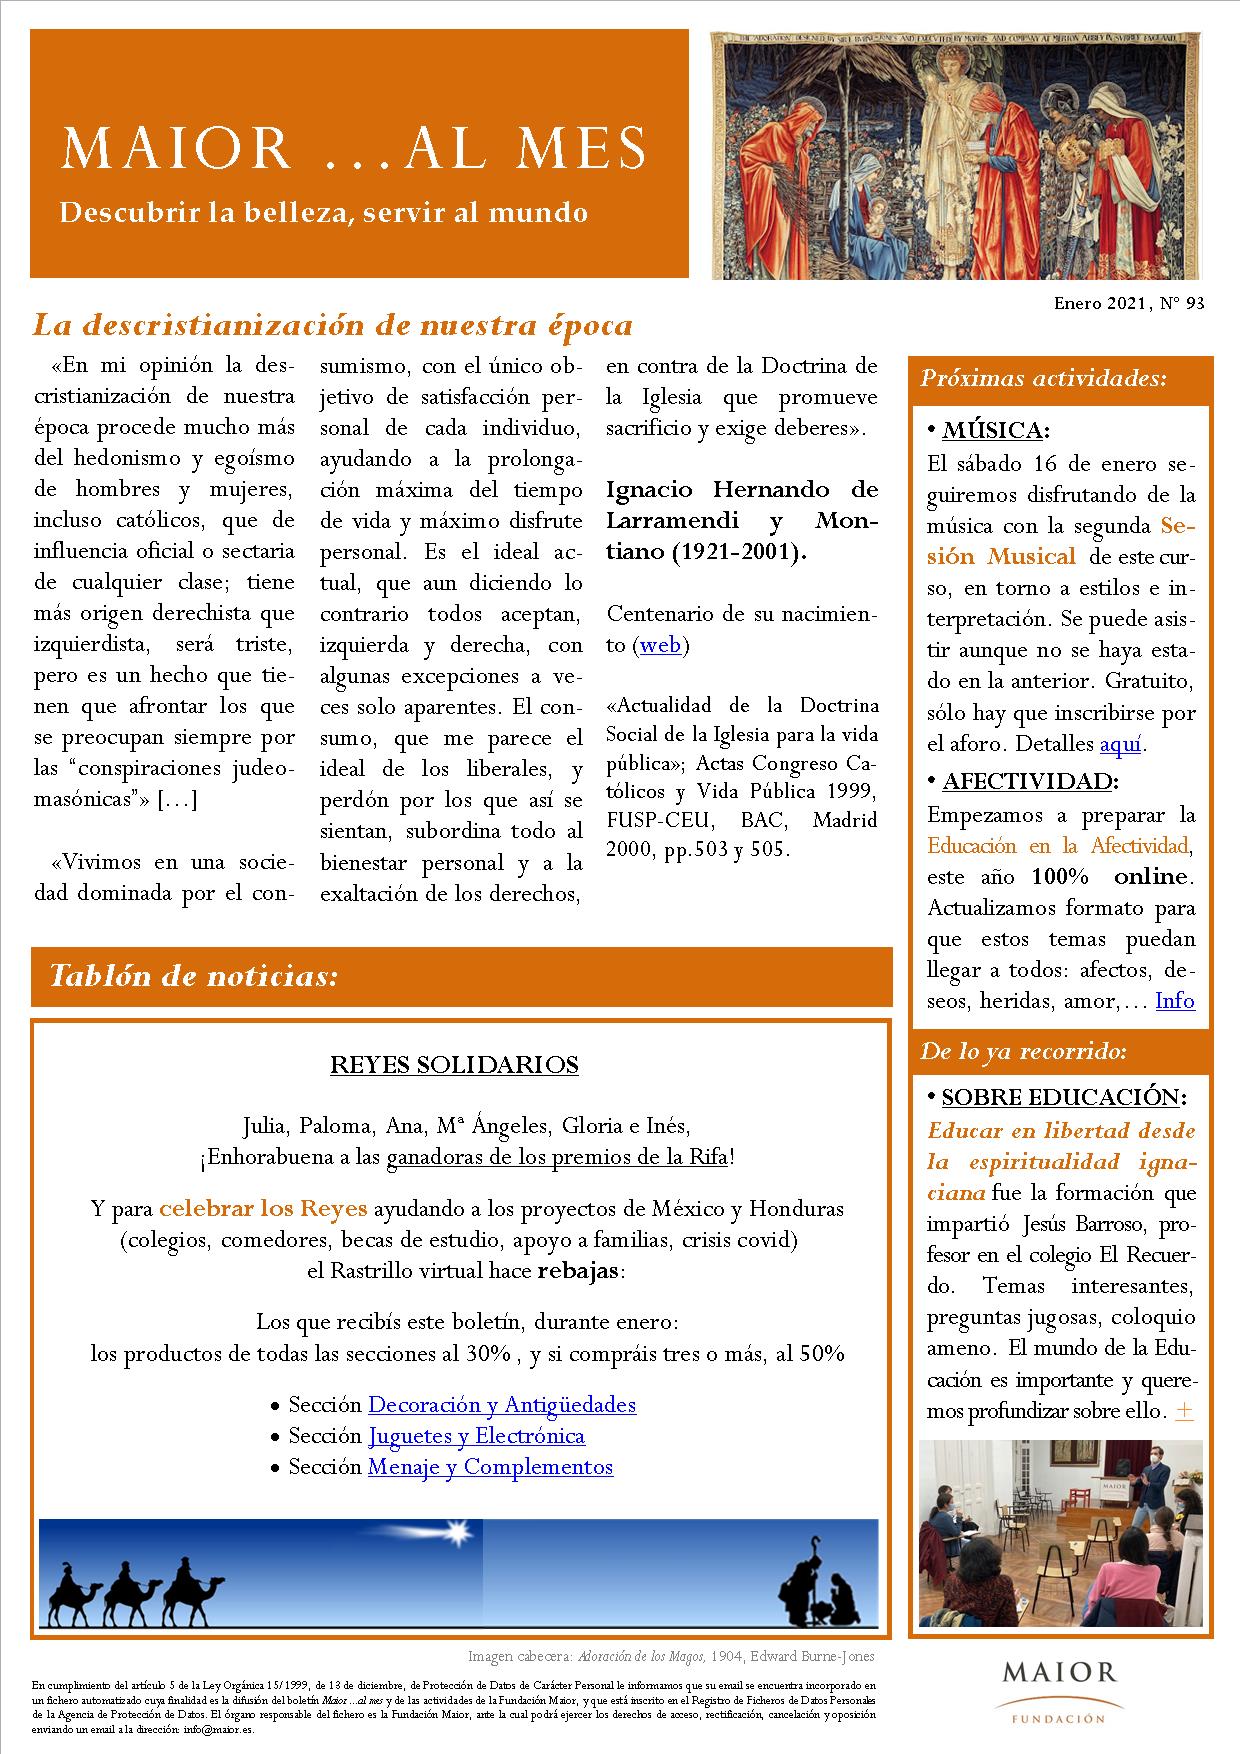 Boletín mensual de noticias y actividades de la Fundación Maior. Edición de enero 2021